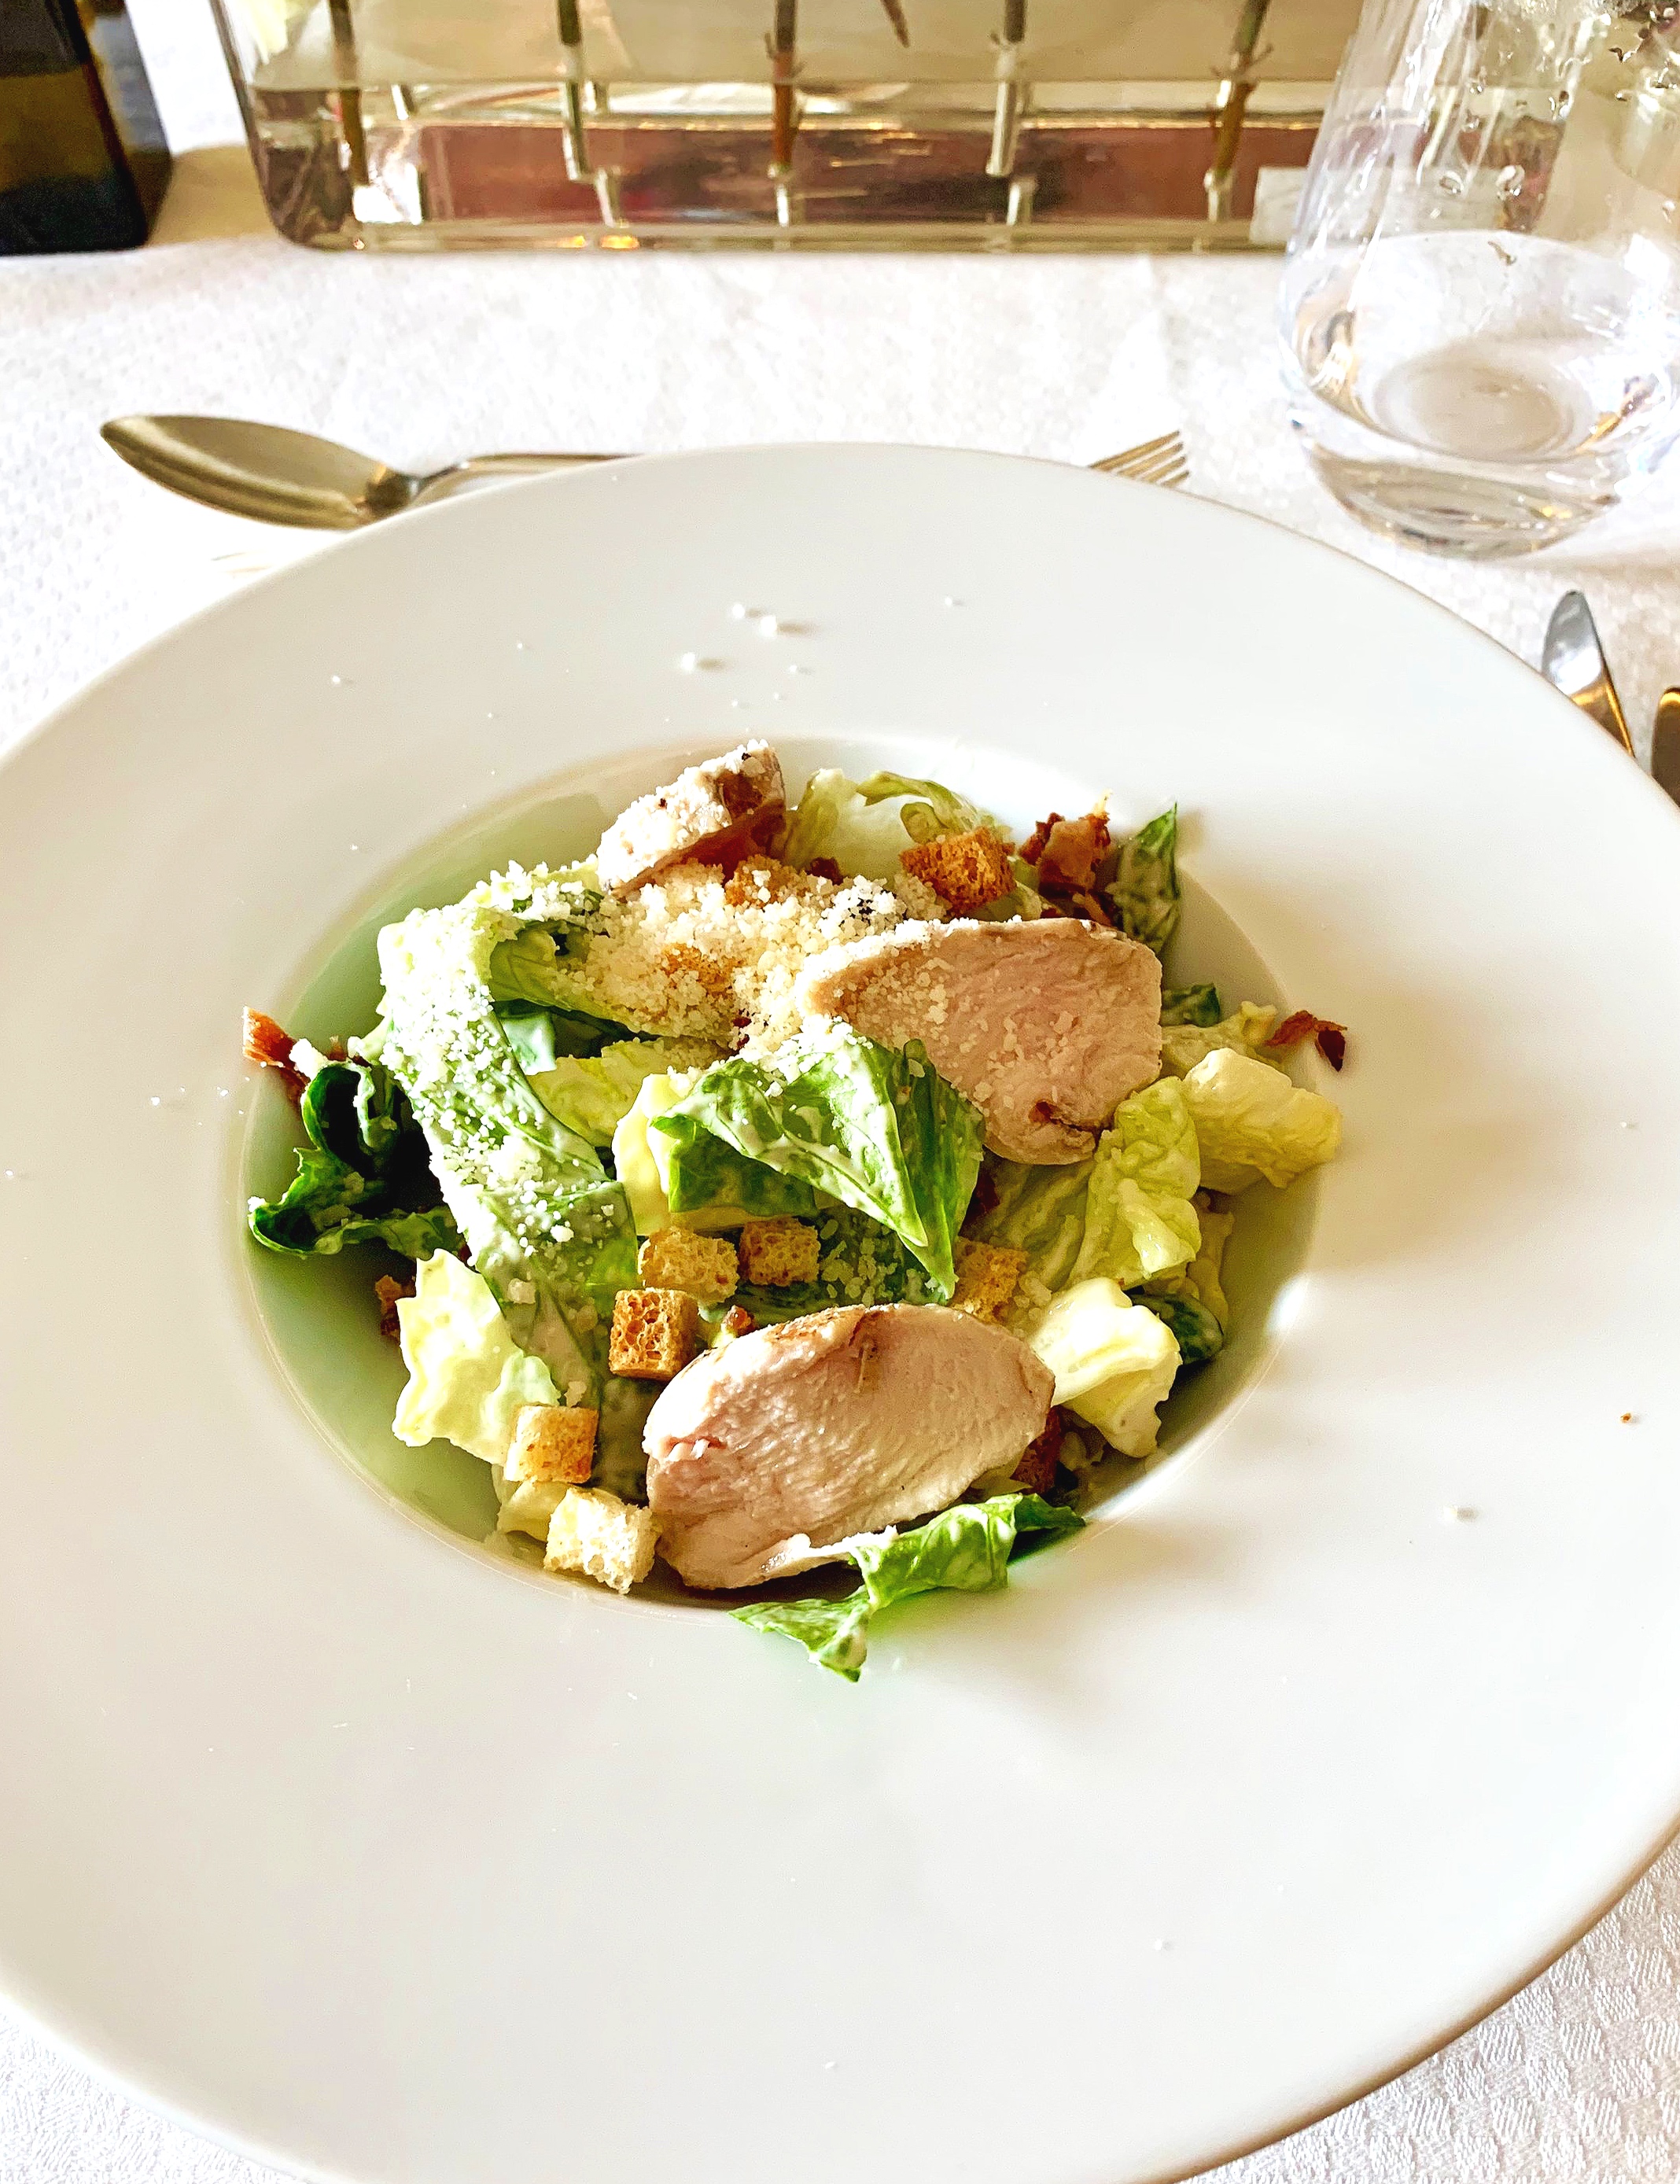  Delicious chicken Caesar salad.  